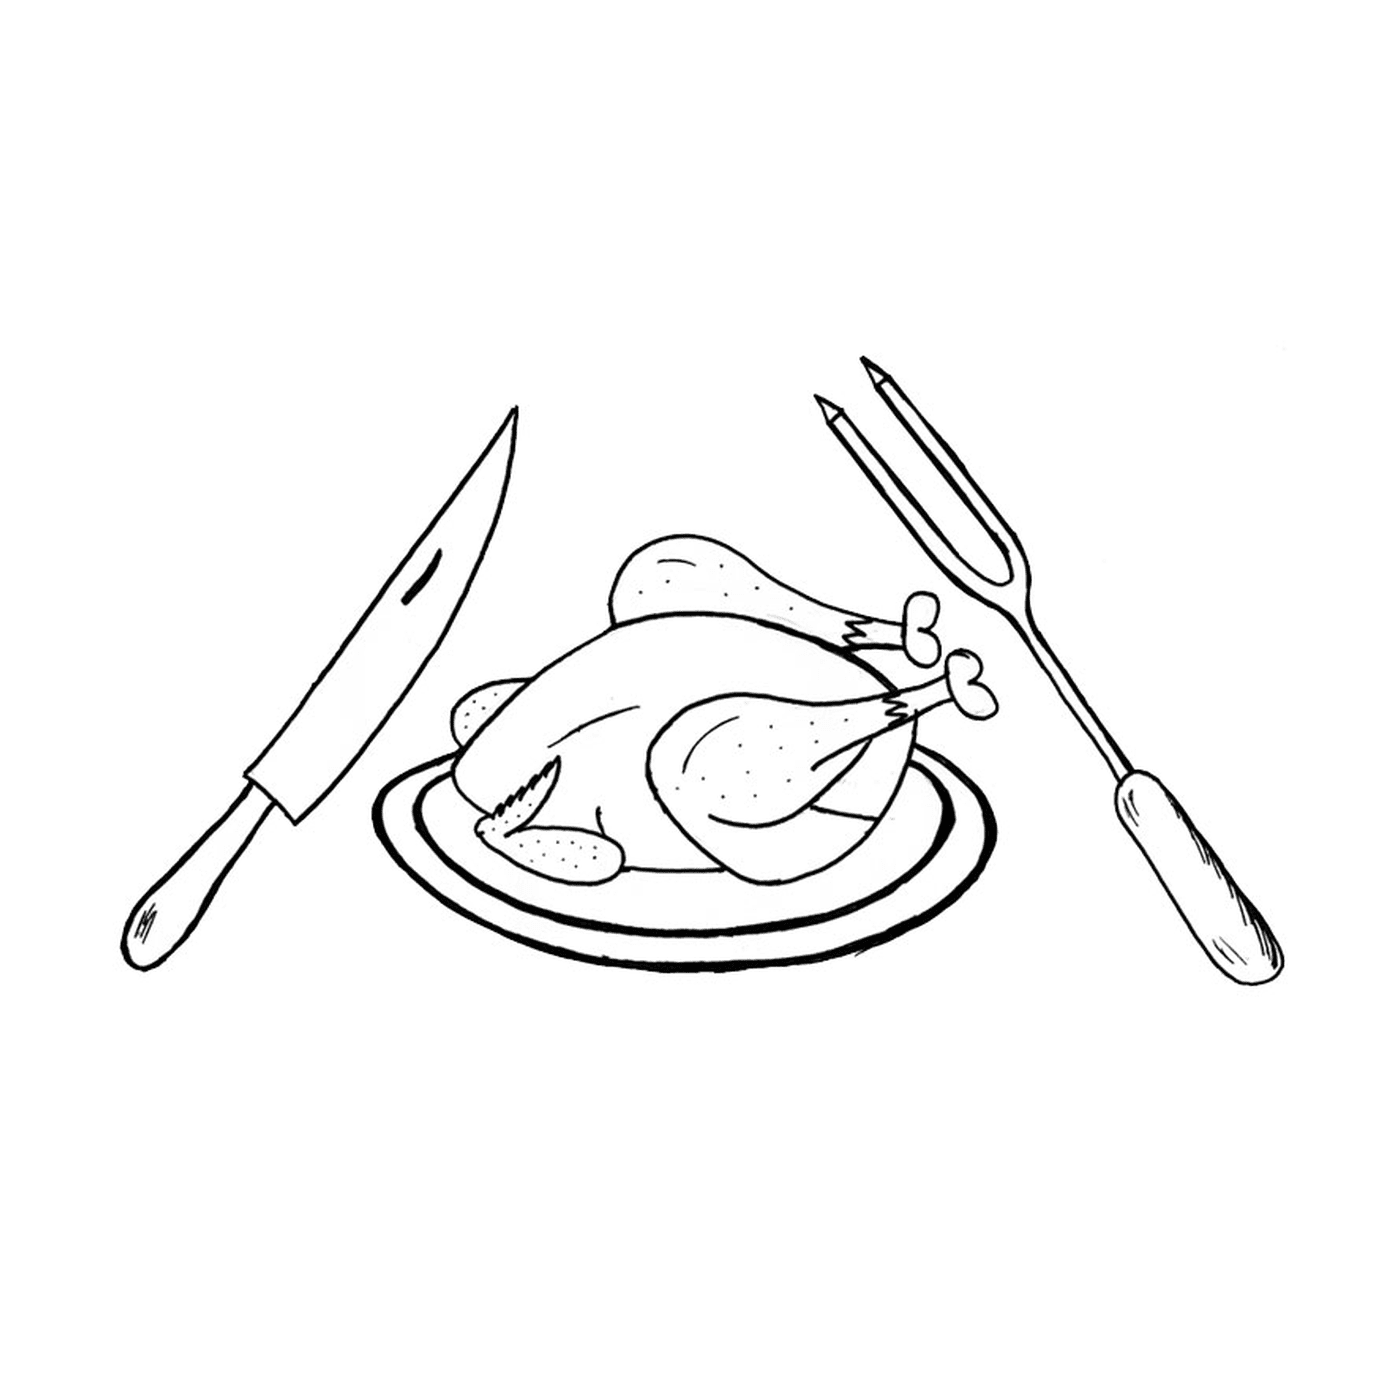  Un pollo su un piatto con un coltello, una forchetta e una forchetta 